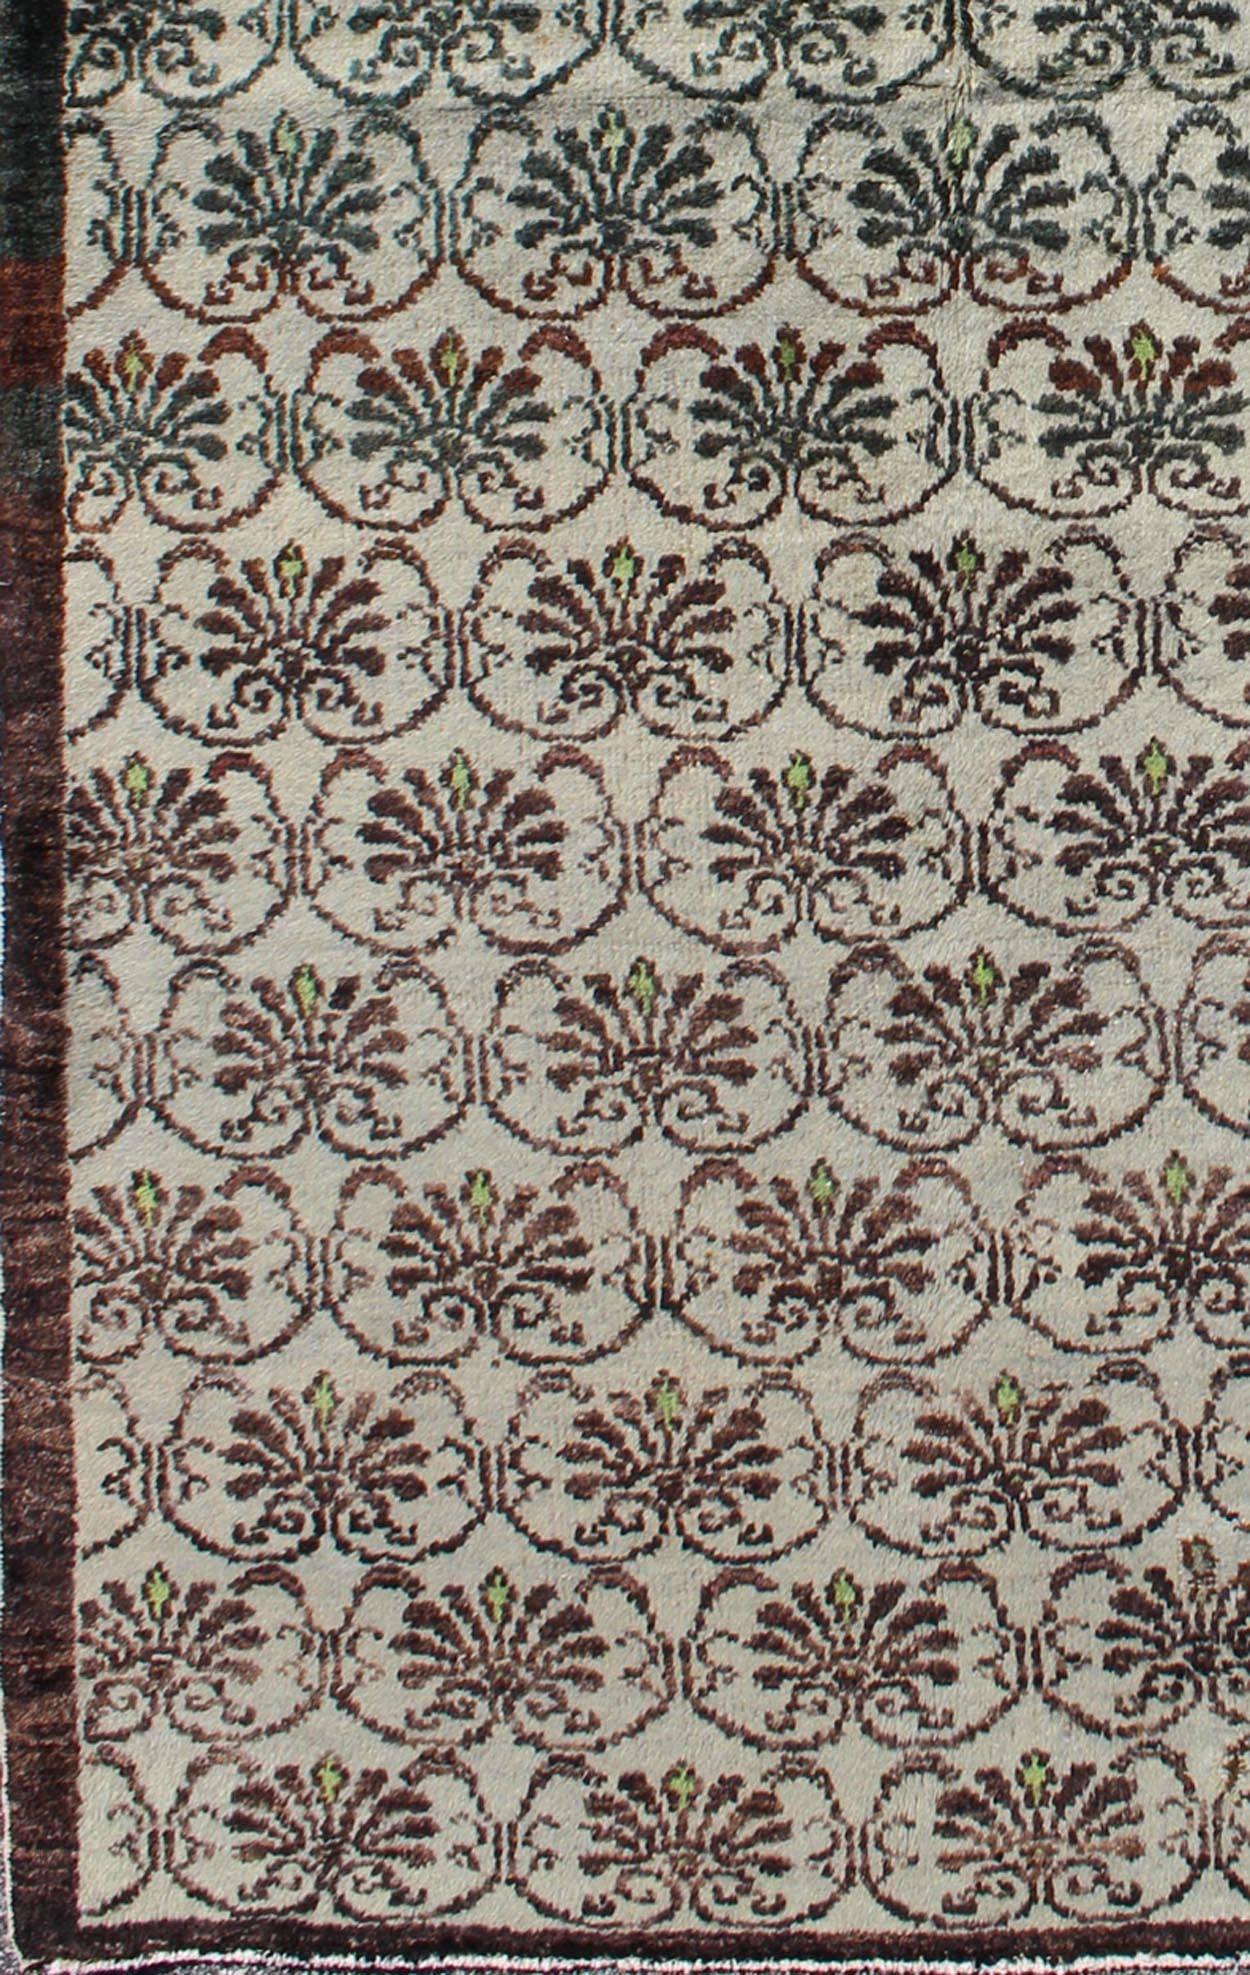 Dieser Oushak-Teppich (ca. Mitte des 20. Jahrhunderts) zeigt ein Allover-Muster aus miteinander verbundenen, vertikal angeordneten Rankenblüten. Die Farben sind schokoladenbraun mit einem Hauch von Grün auf einem elfenbeinfarbenen